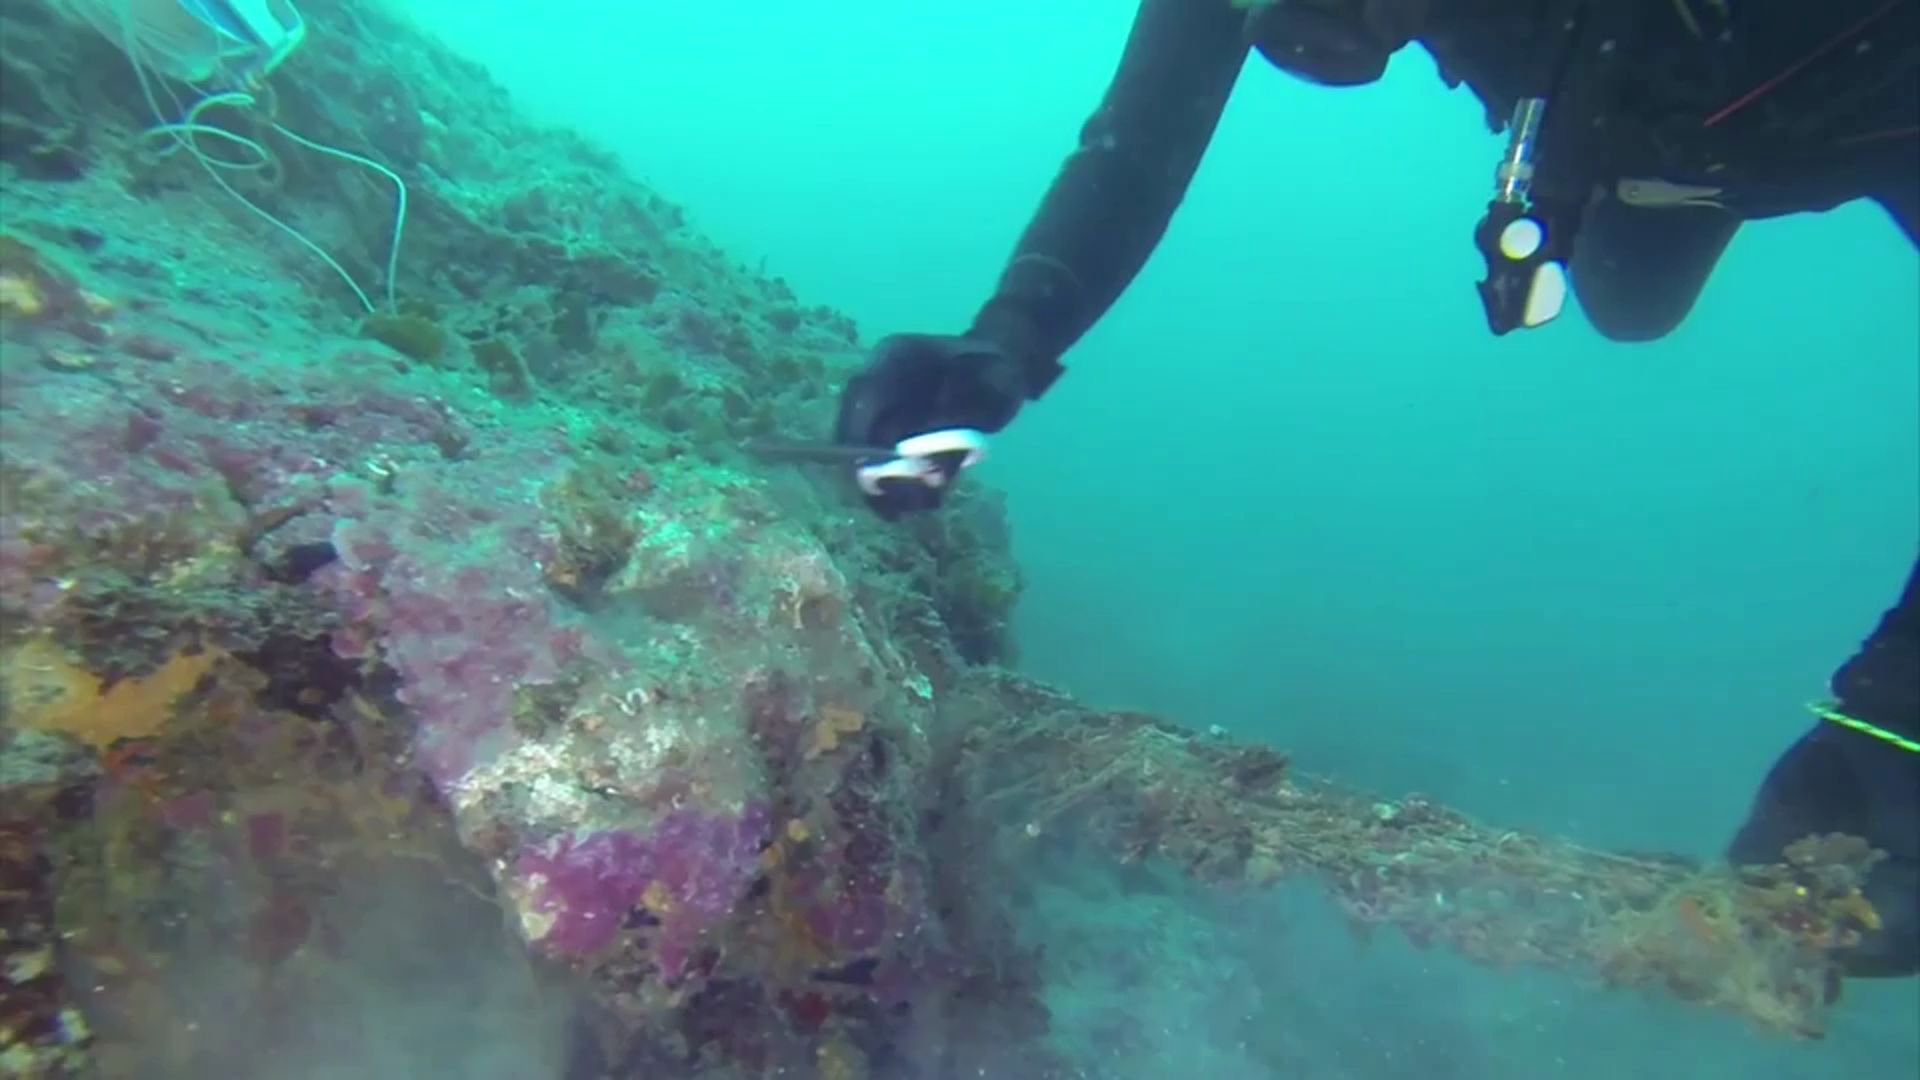 Retirant xarxes de pesca perdudes del fons marí